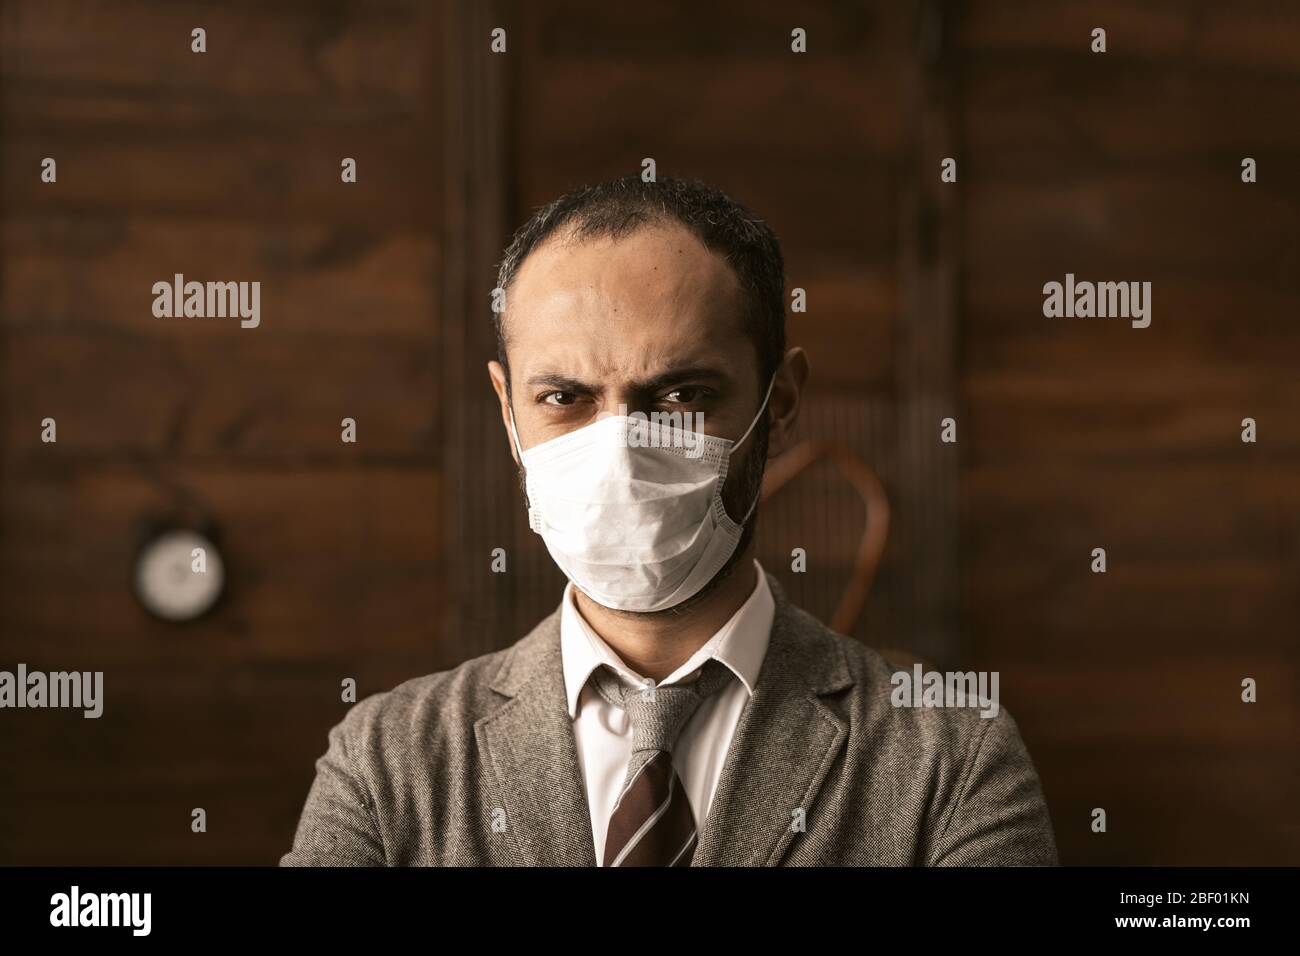 El hombre de negocios en la máscara protectora está aislado Foto de stock